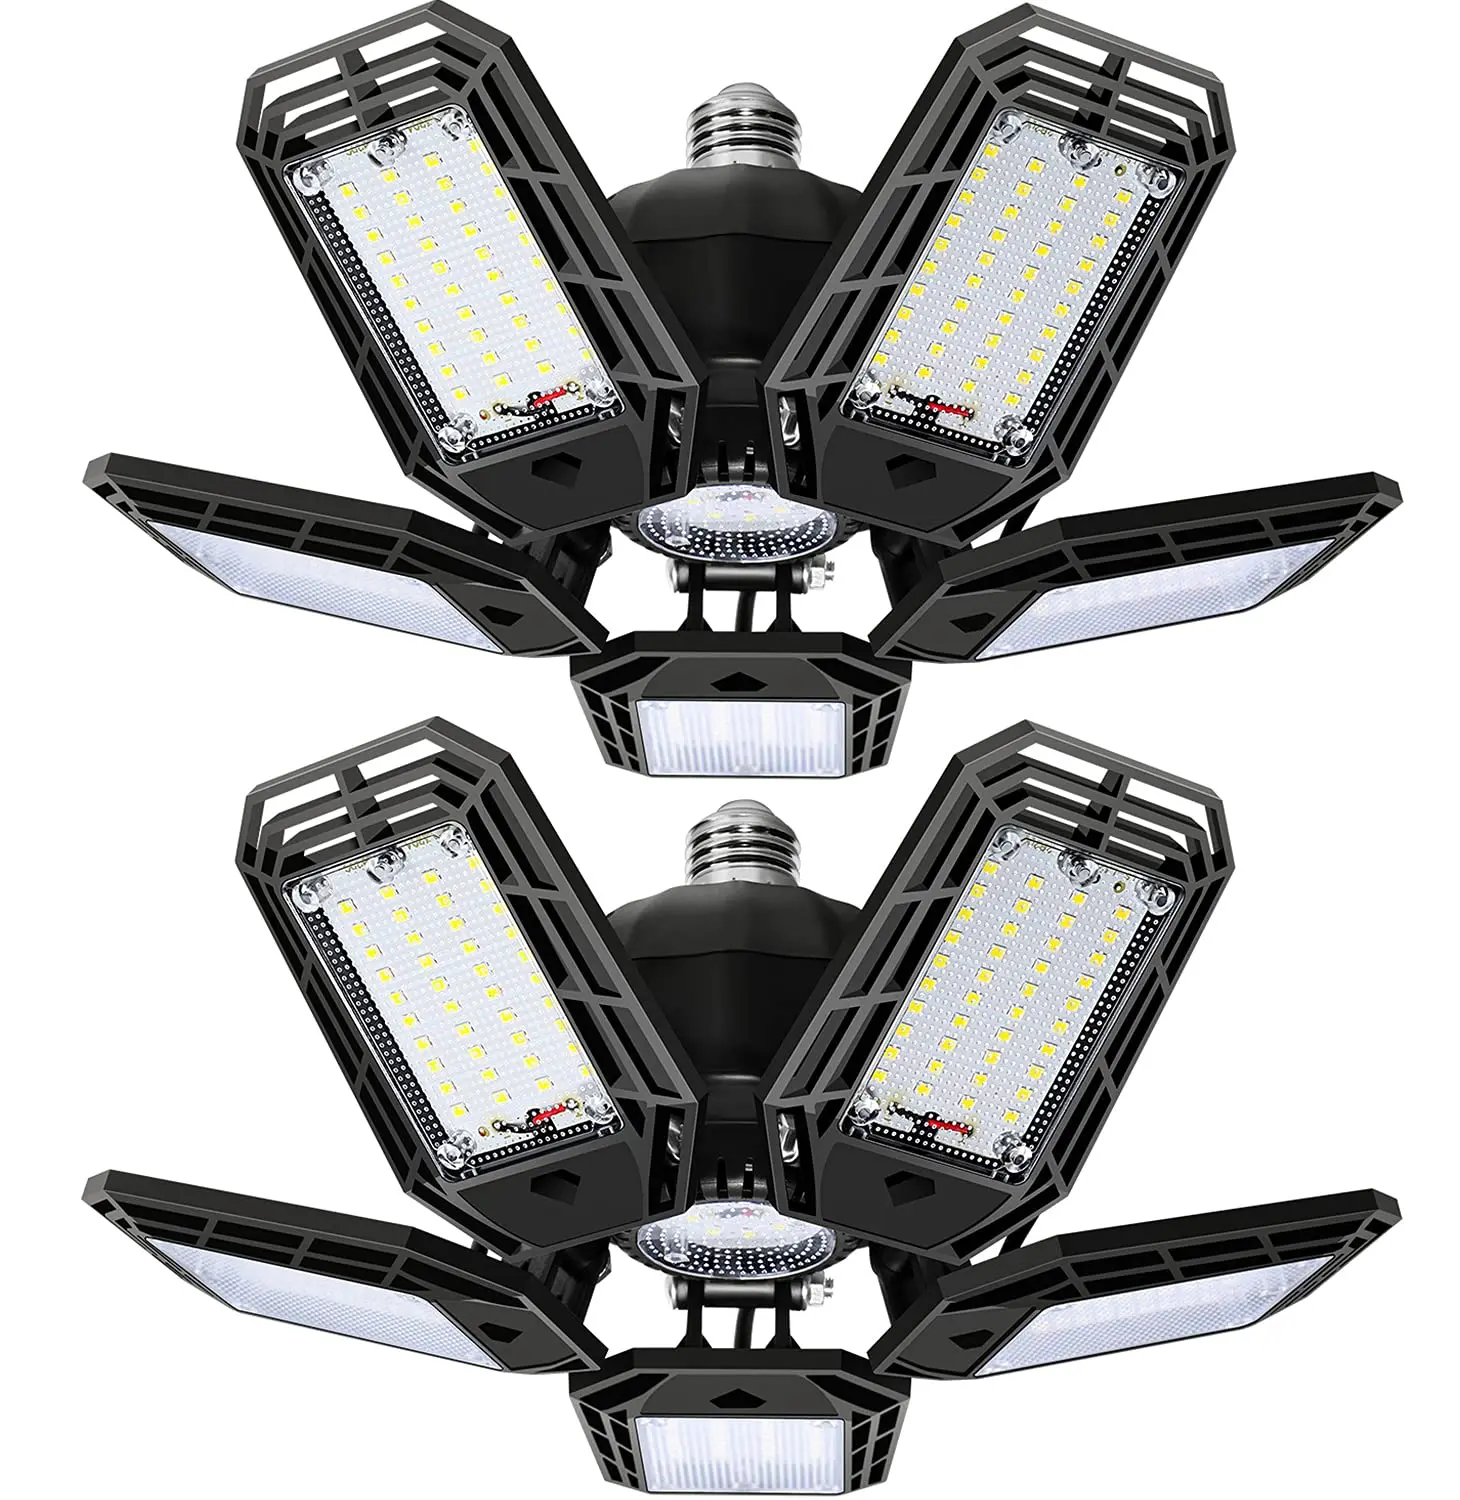 LED Garage Lights with 5 Adjustable Panels enlarge